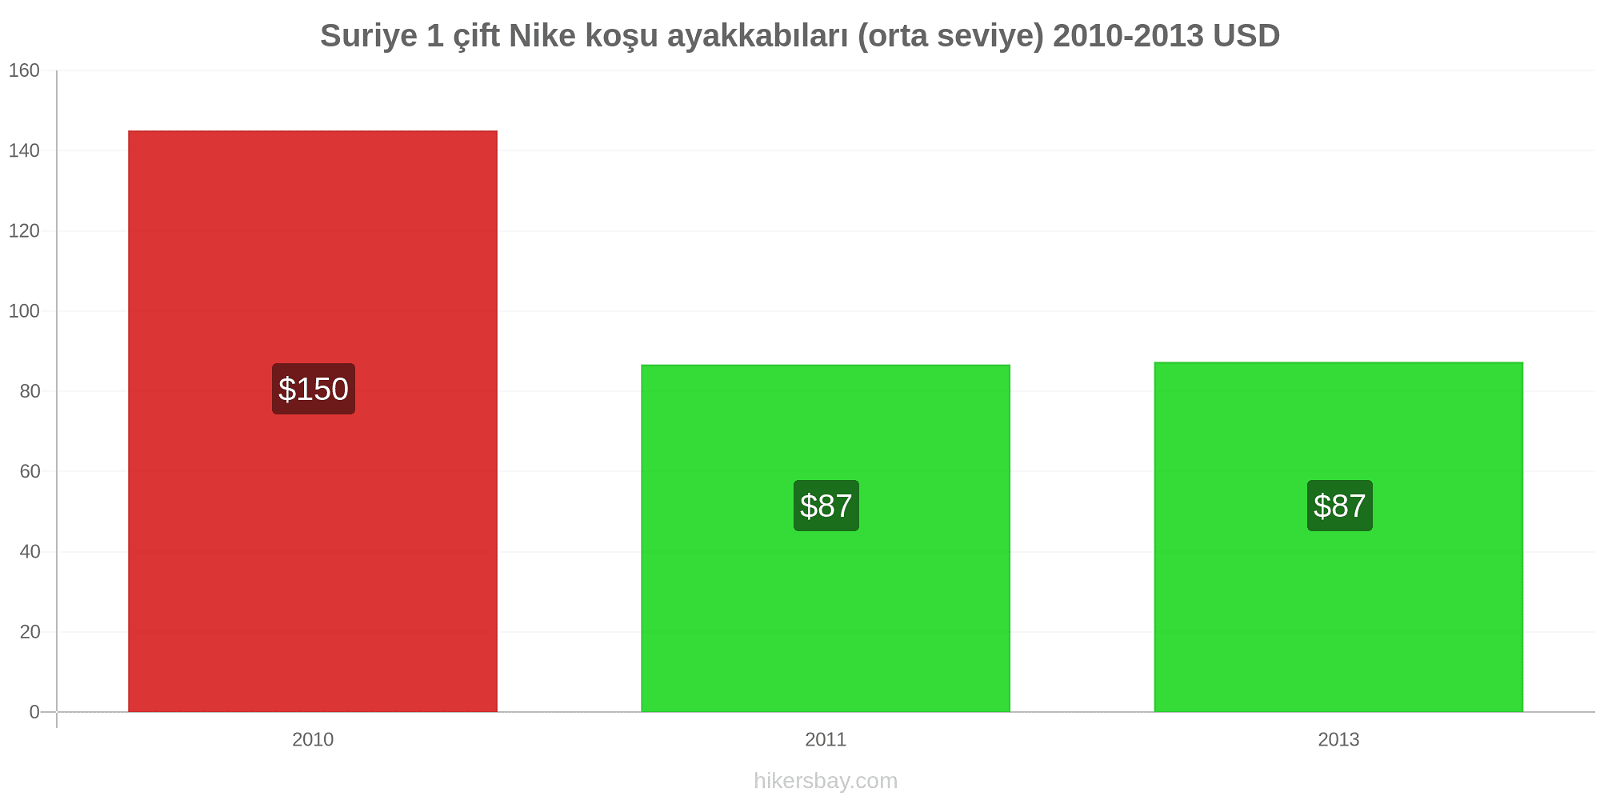 Suriye fiyat değişiklikleri 1 çift Nike koşu ayakkabıları (orta seviye) hikersbay.com